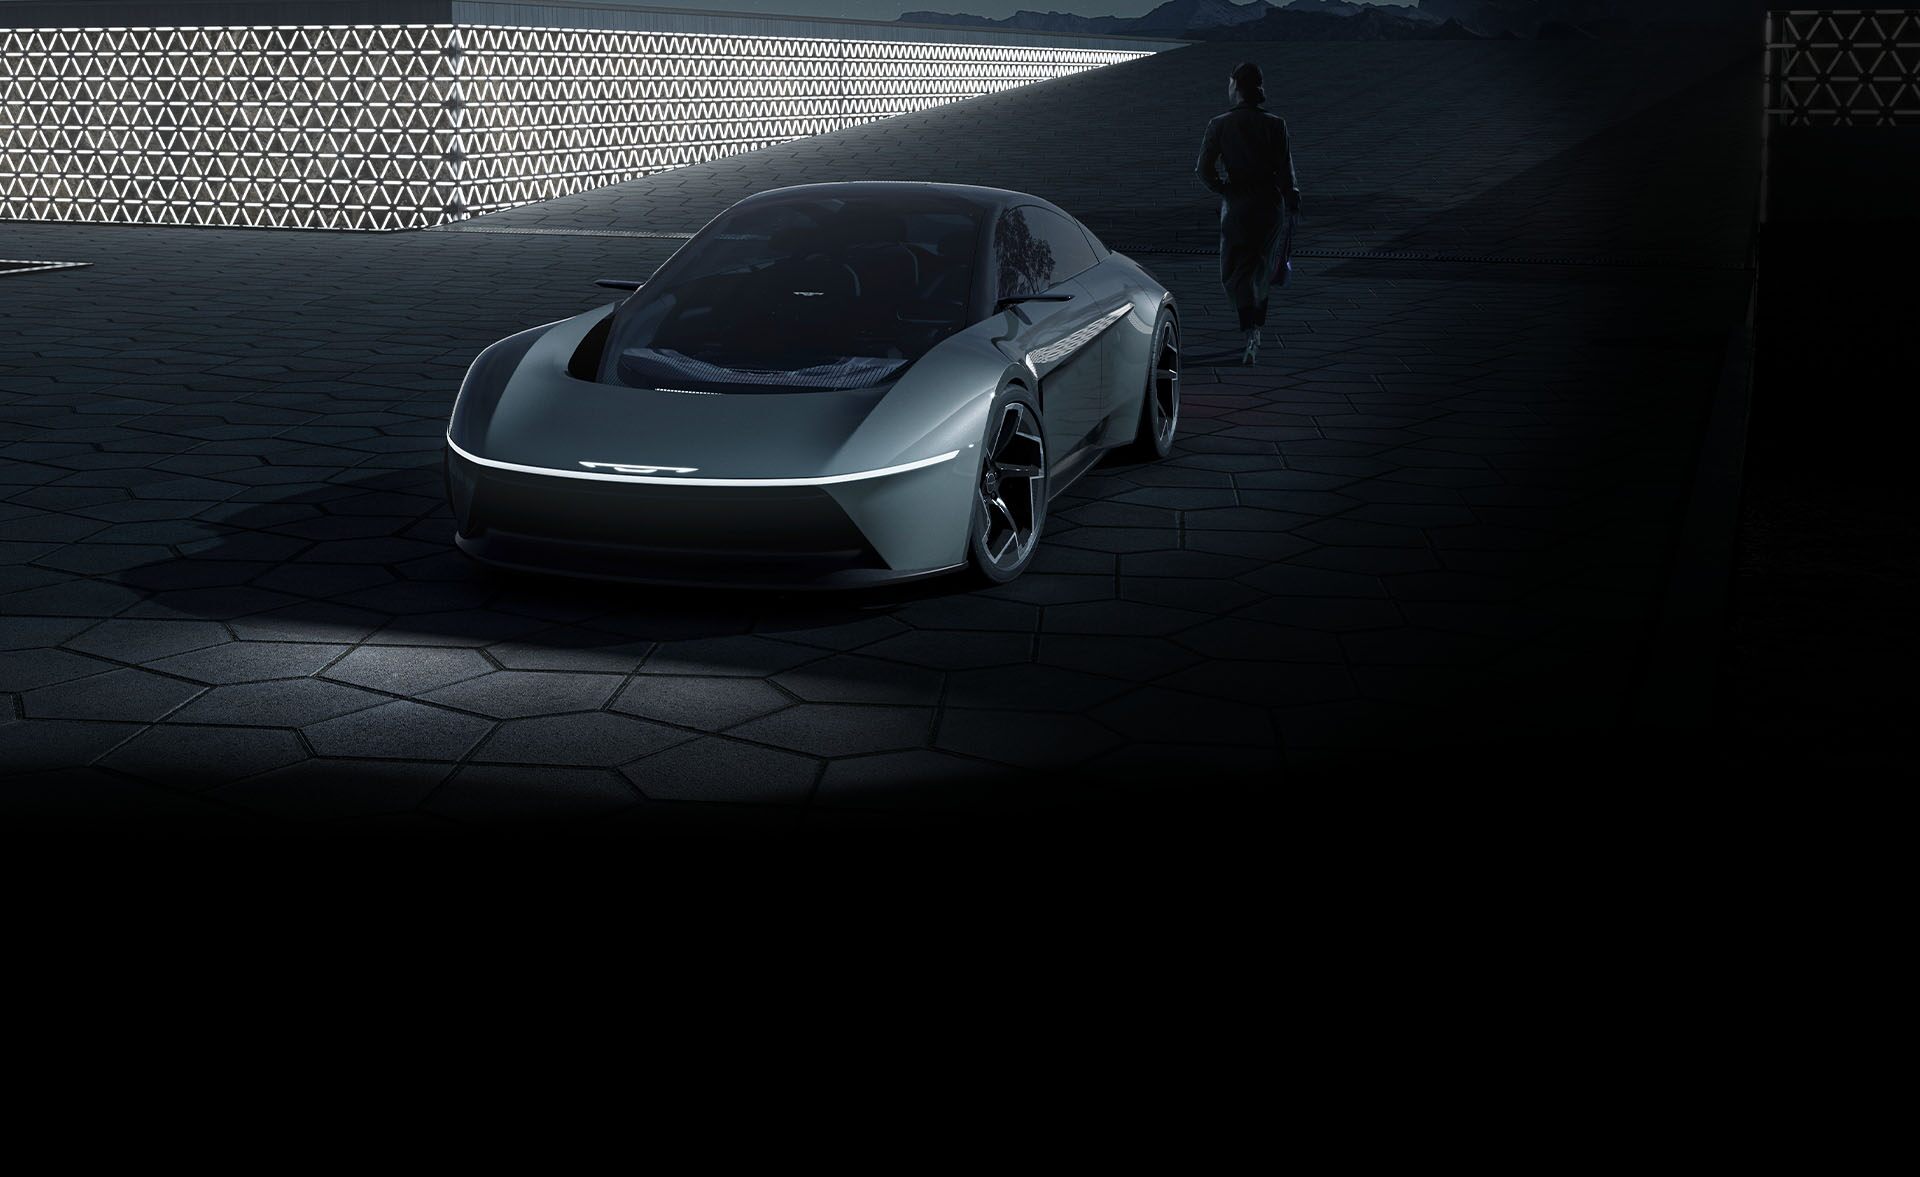 Ángulo frontal elevado de un vehículo Chrysler Halcyon Concept gris estacionado en un patio en penumbra.